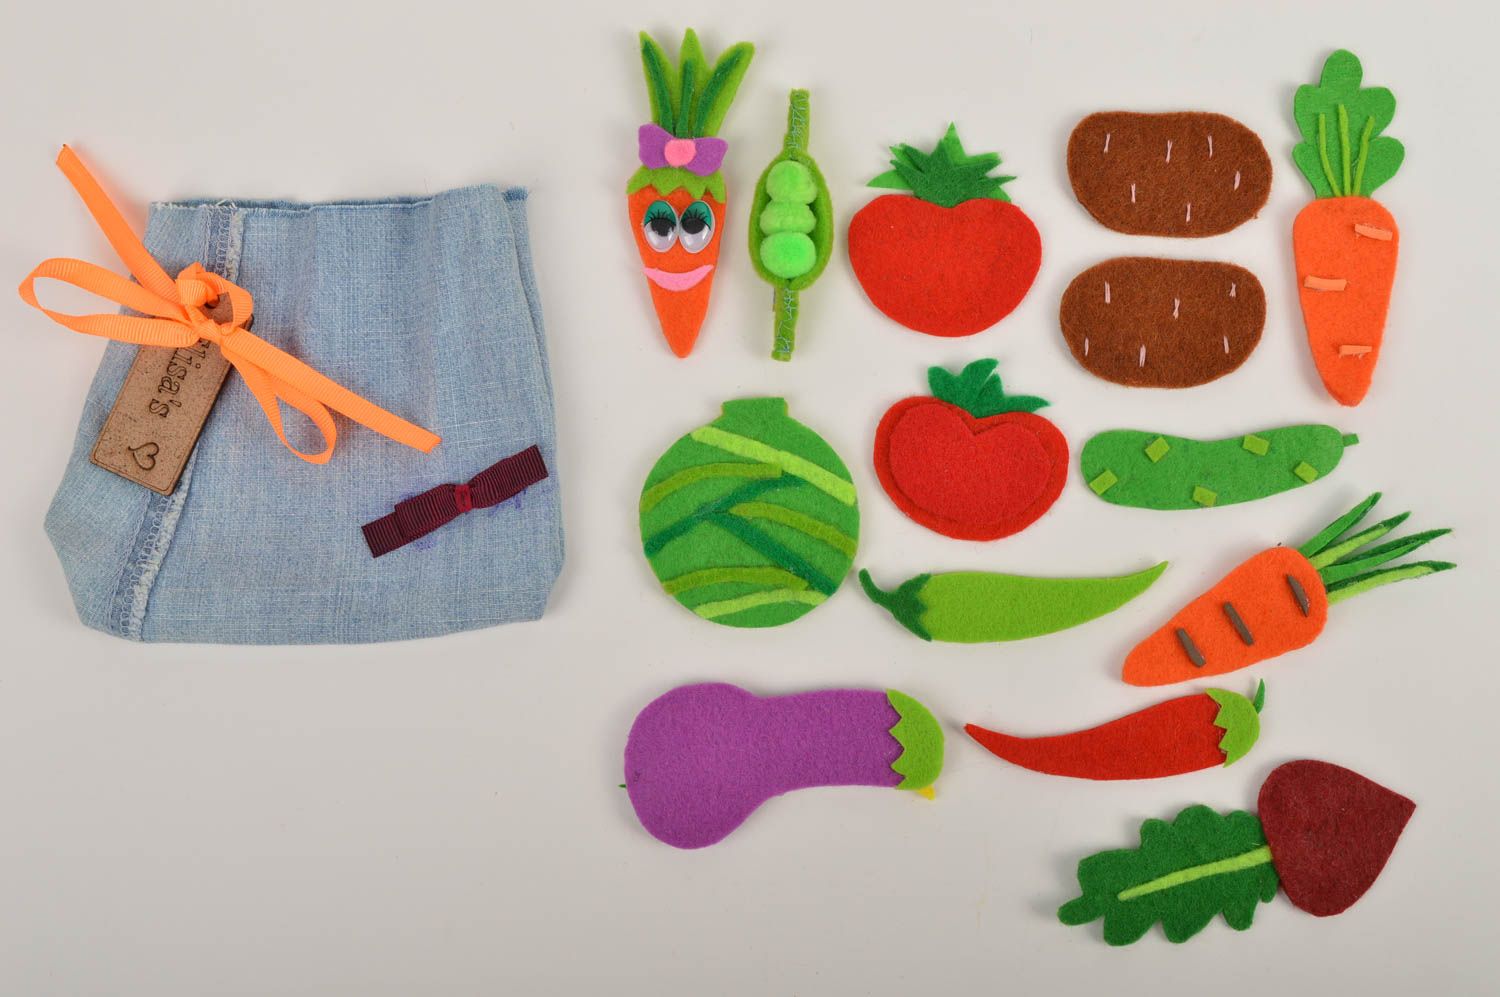 Магниты ручной работы магниты для детей фетровые игрушки в виде овощей 15 штук фото 3